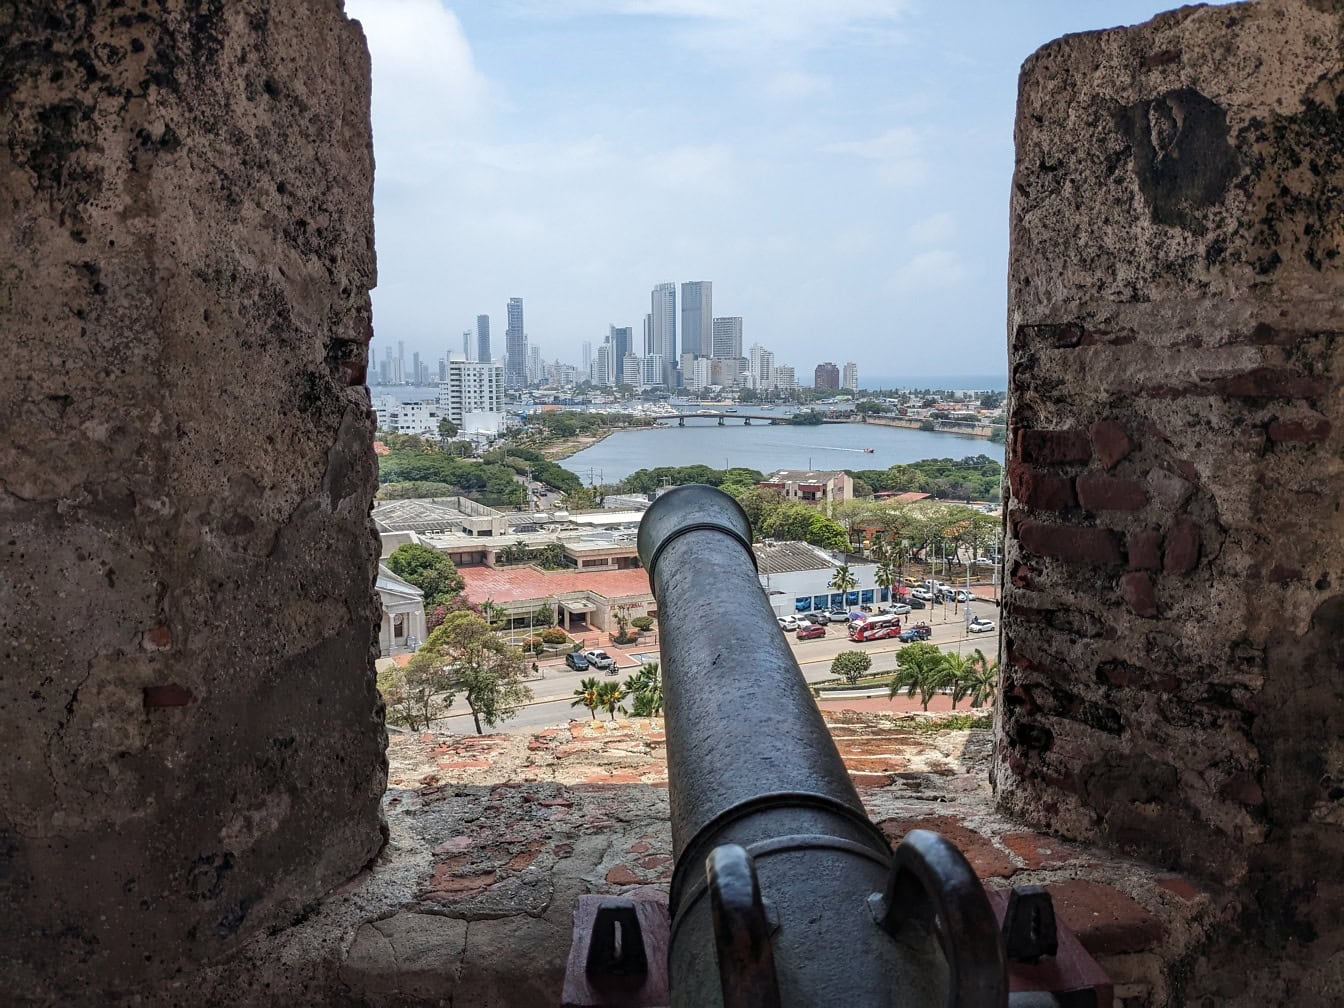 Columbia’daki Cartagena şehrinde turistik bir cazibe merkezi olan Castillo de San Felipe kalesinin tepesinden pencereden bakan top